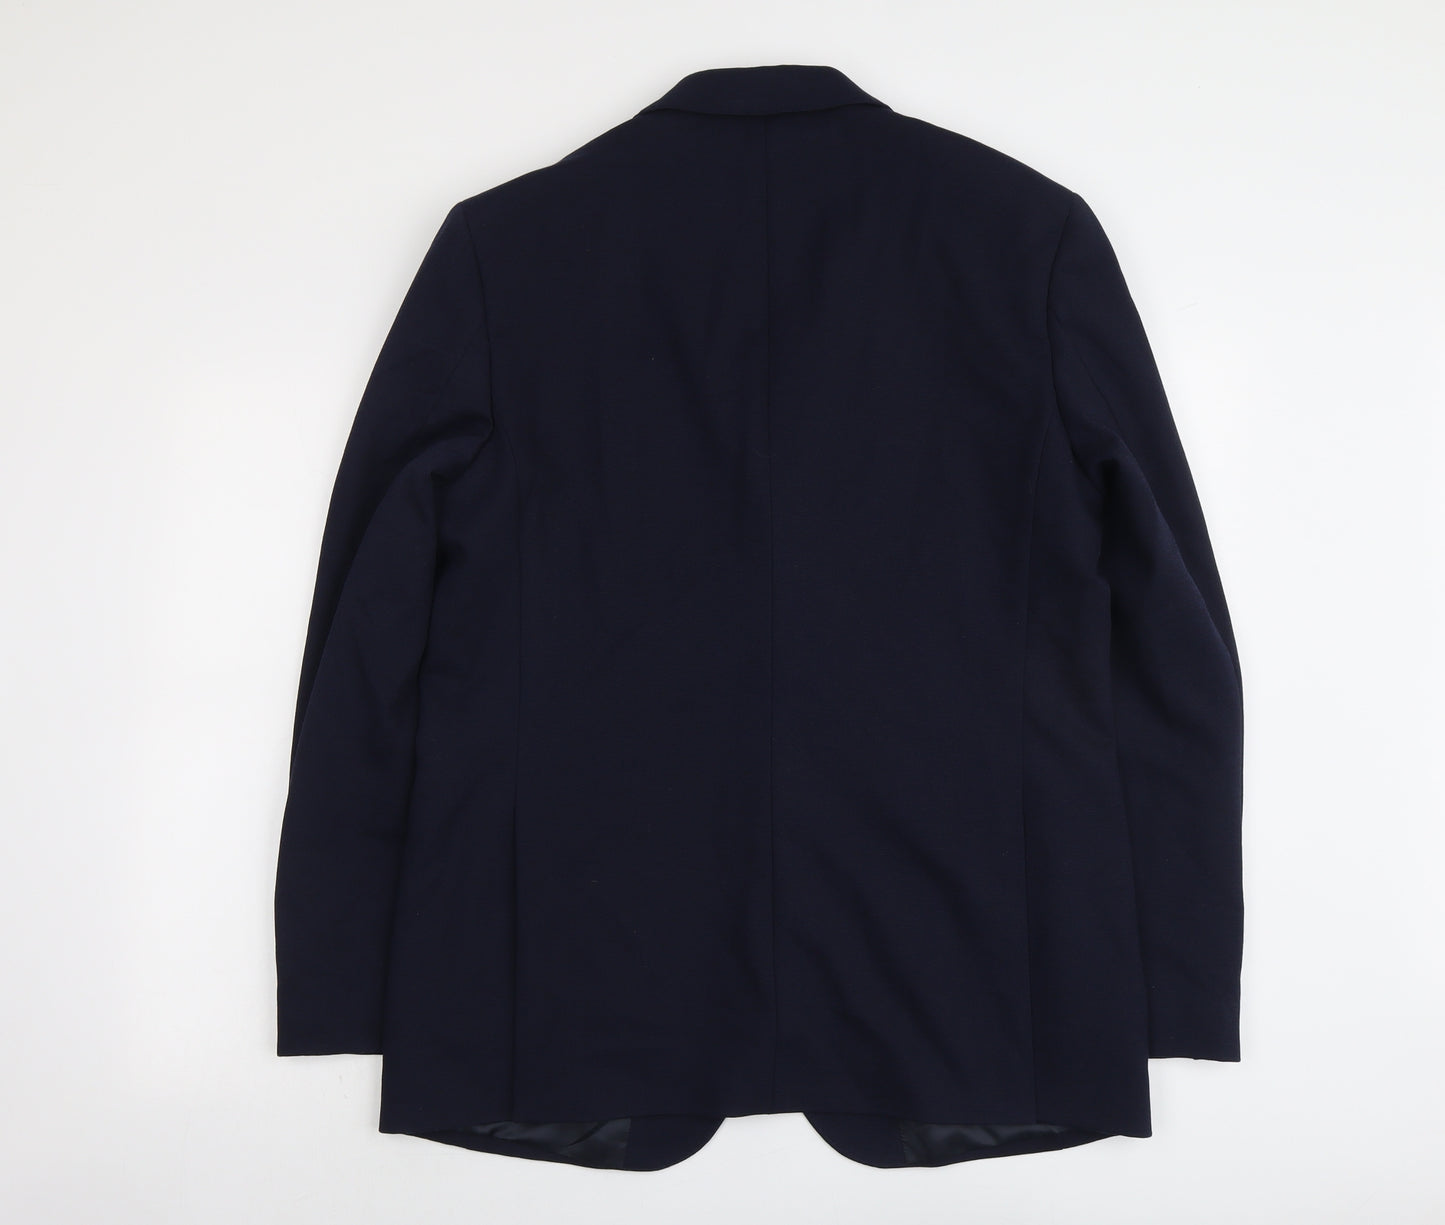 Marks and Spencer Mens Blue Polyamide Jacket Suit Jacket Size 42 Regular